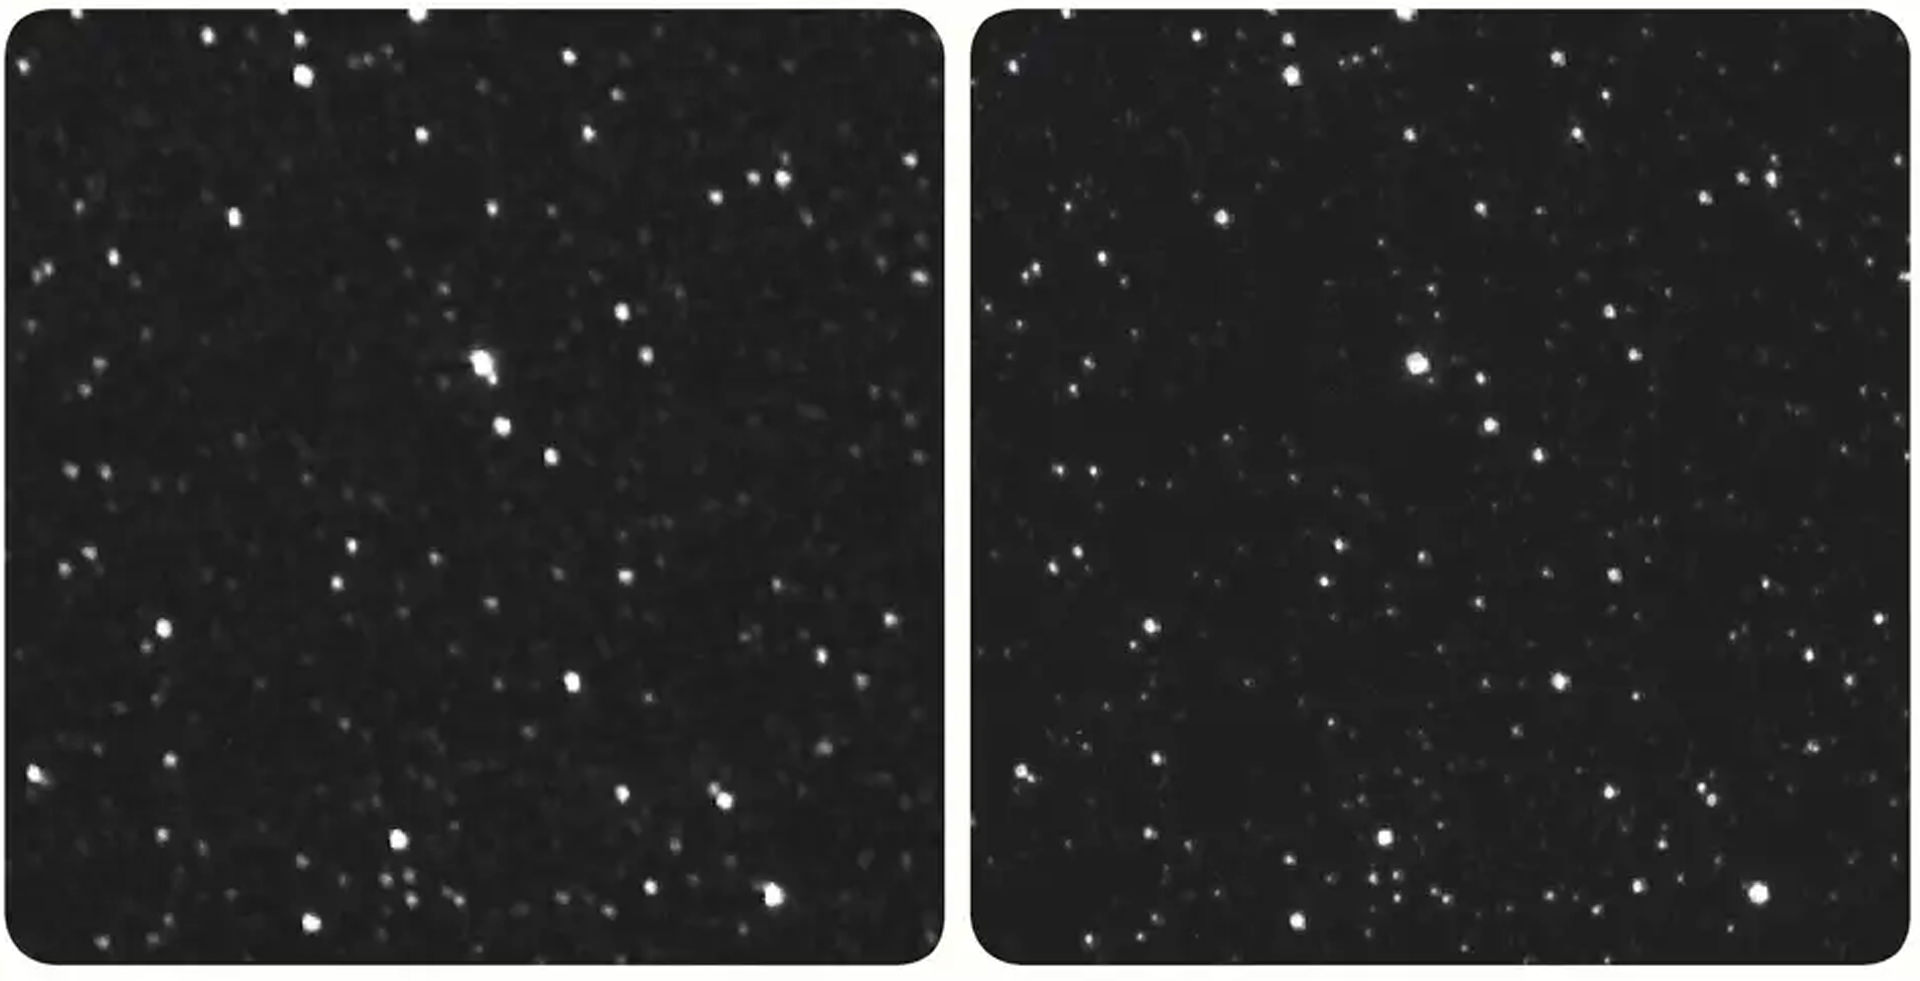 دو نمای متفاوت از پروکسیما قنطورس از زمین و فضایپیما نیو هورایزنز ناسا